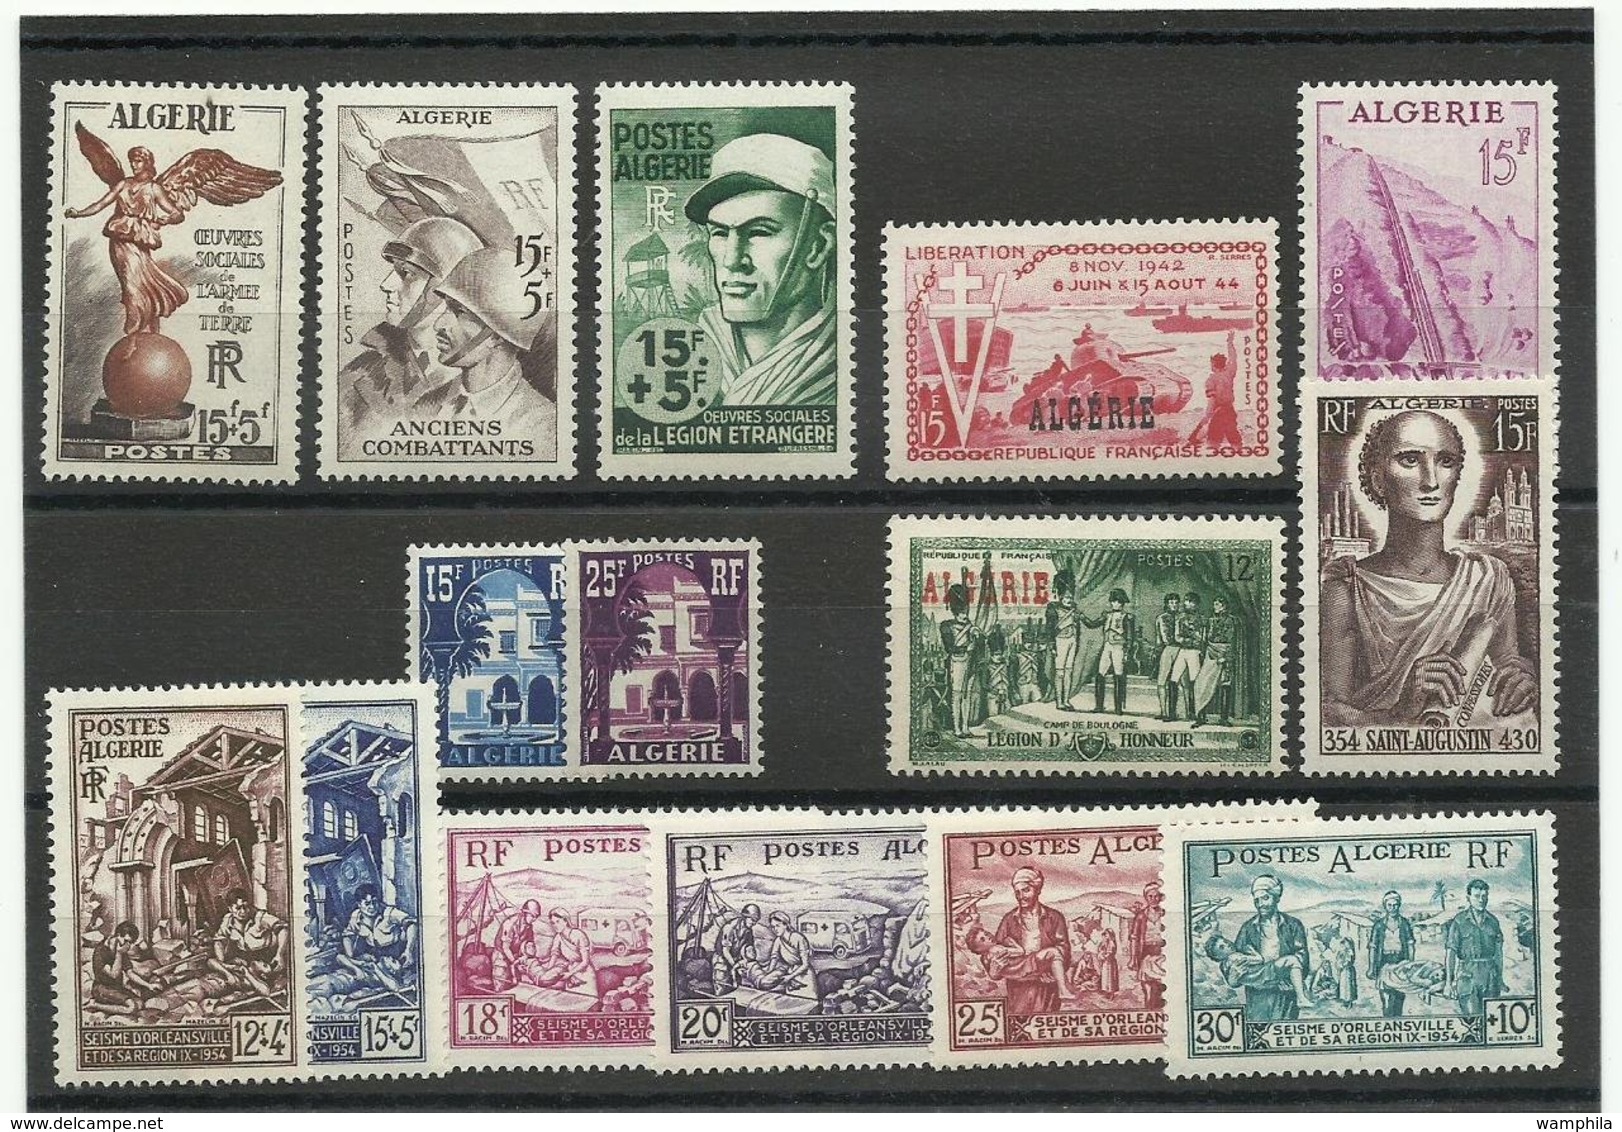 Algérie , lot de timbres neufs** MNH, cote YT 315€ 68